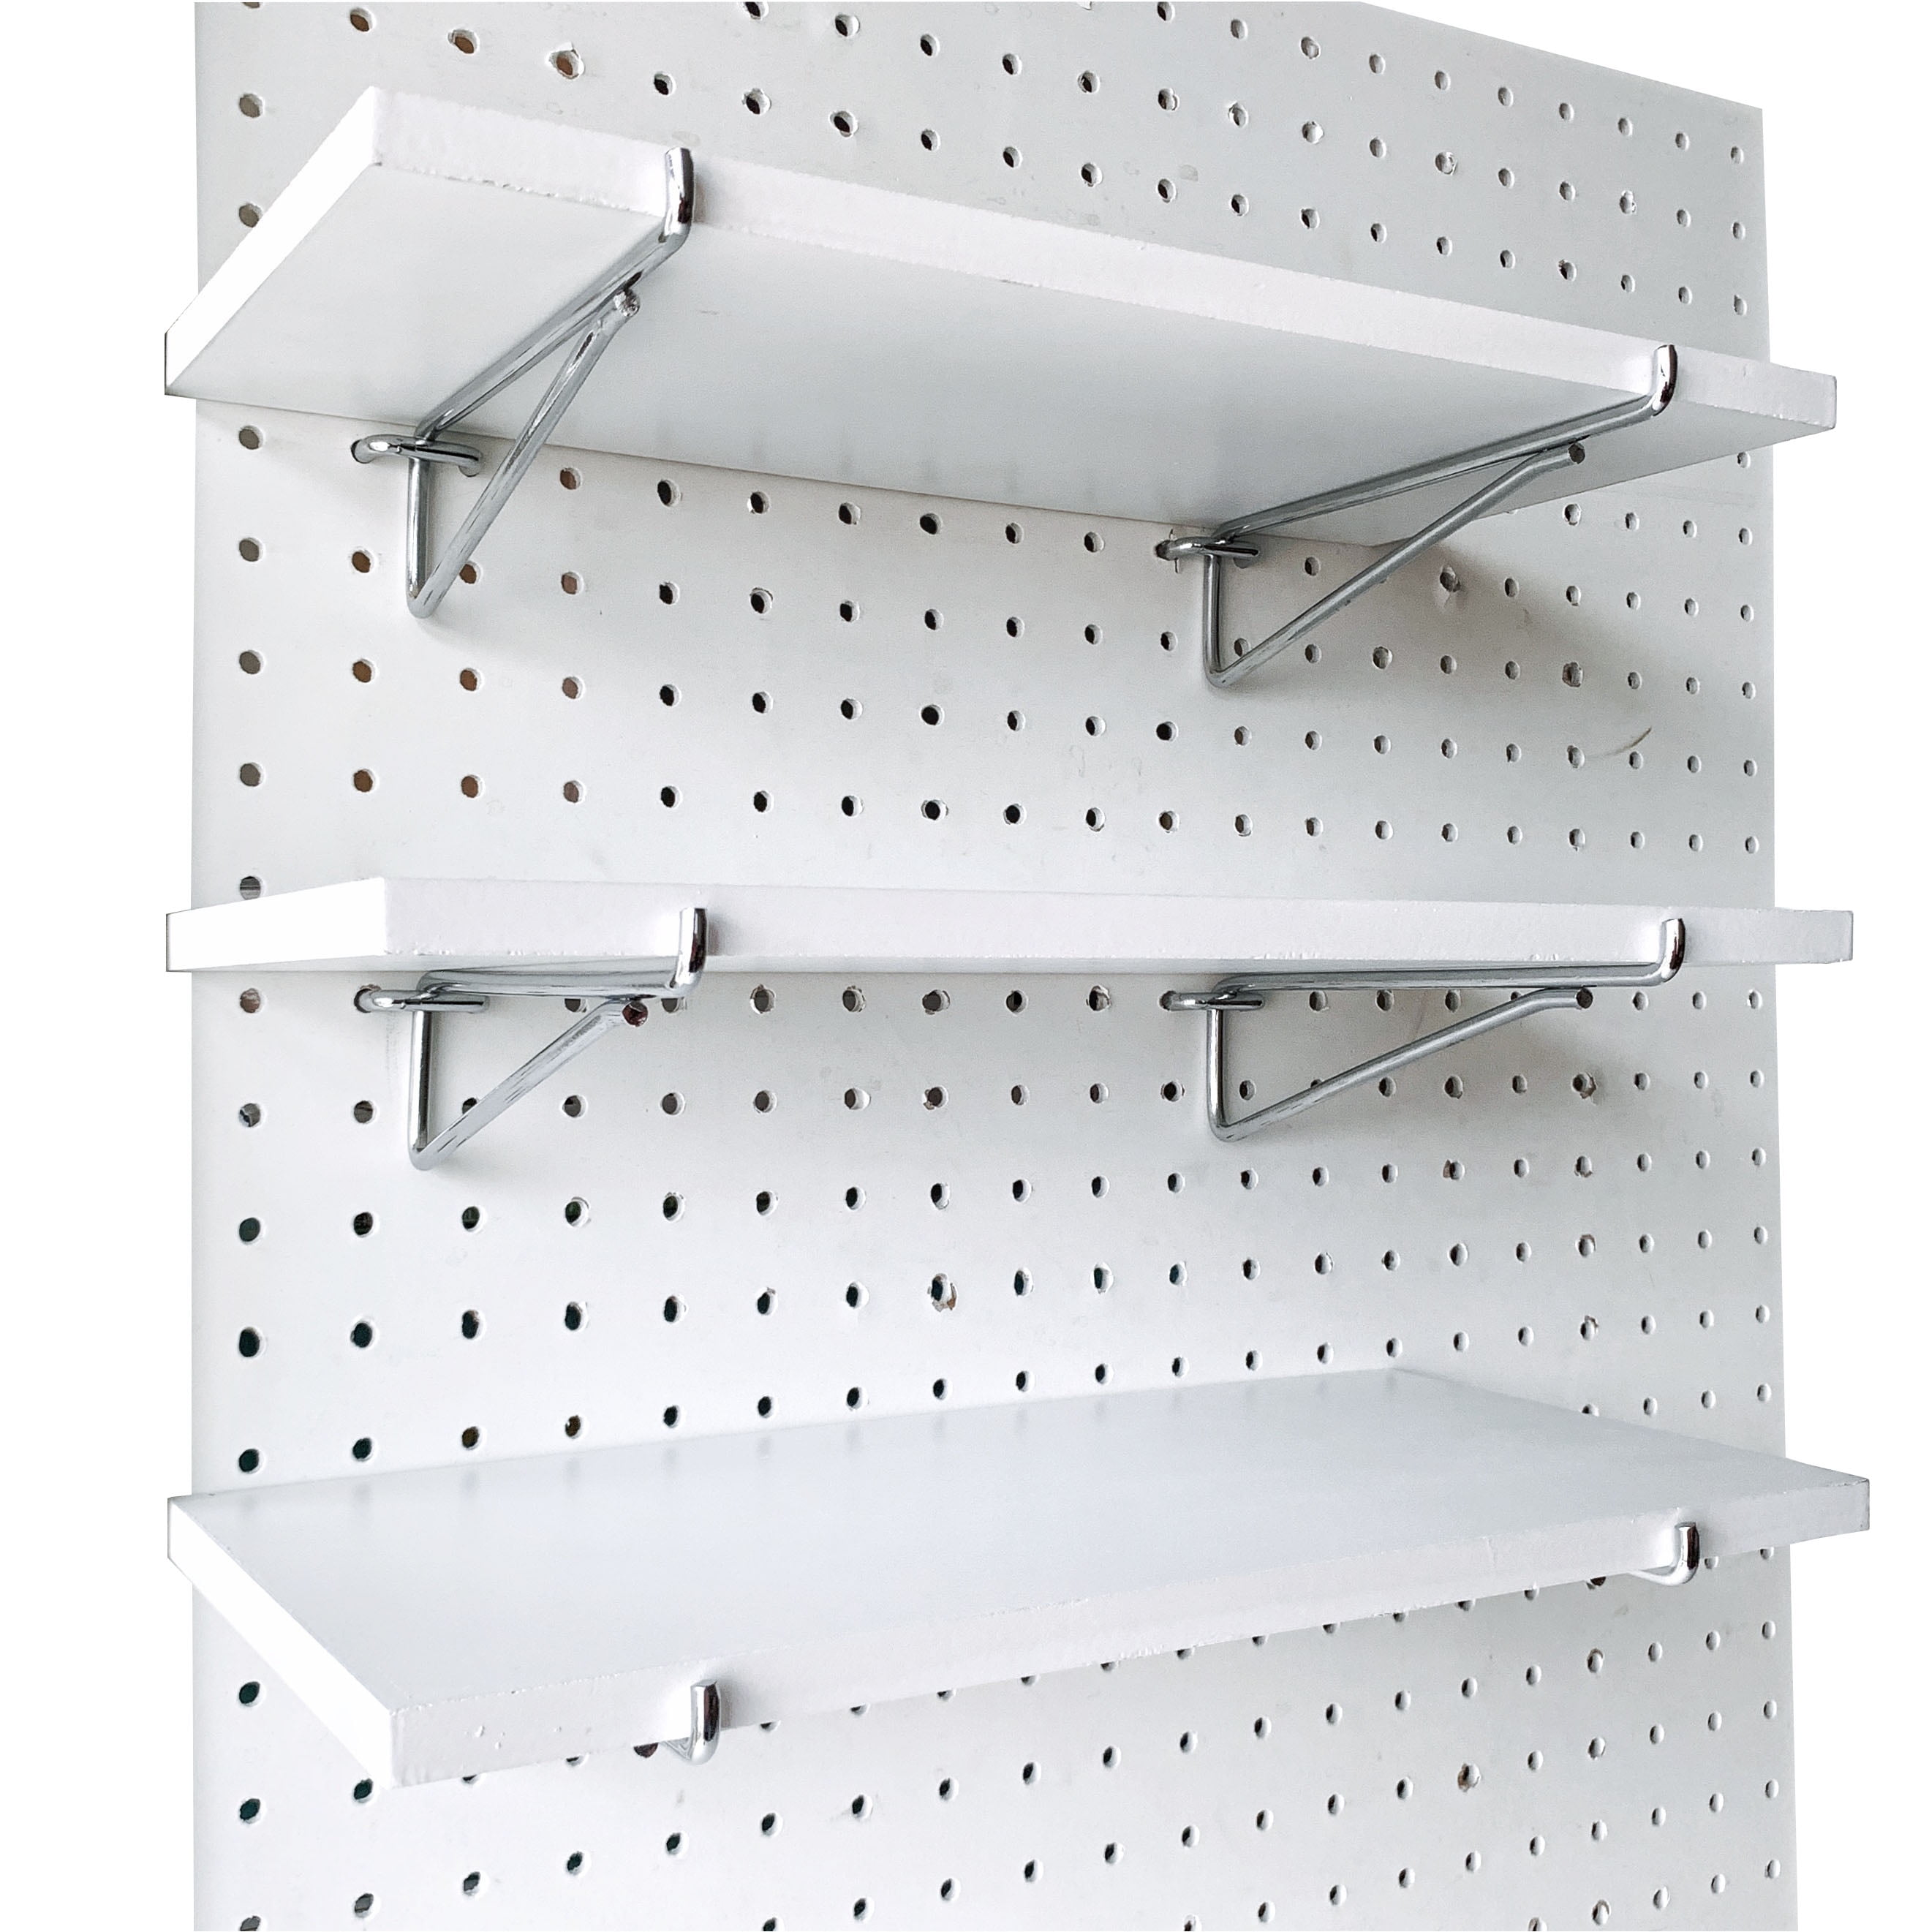 50 4" x 1/4" Pegboard Hooks Shelf Hanger Kit Garage Storage Hanging All Metal 